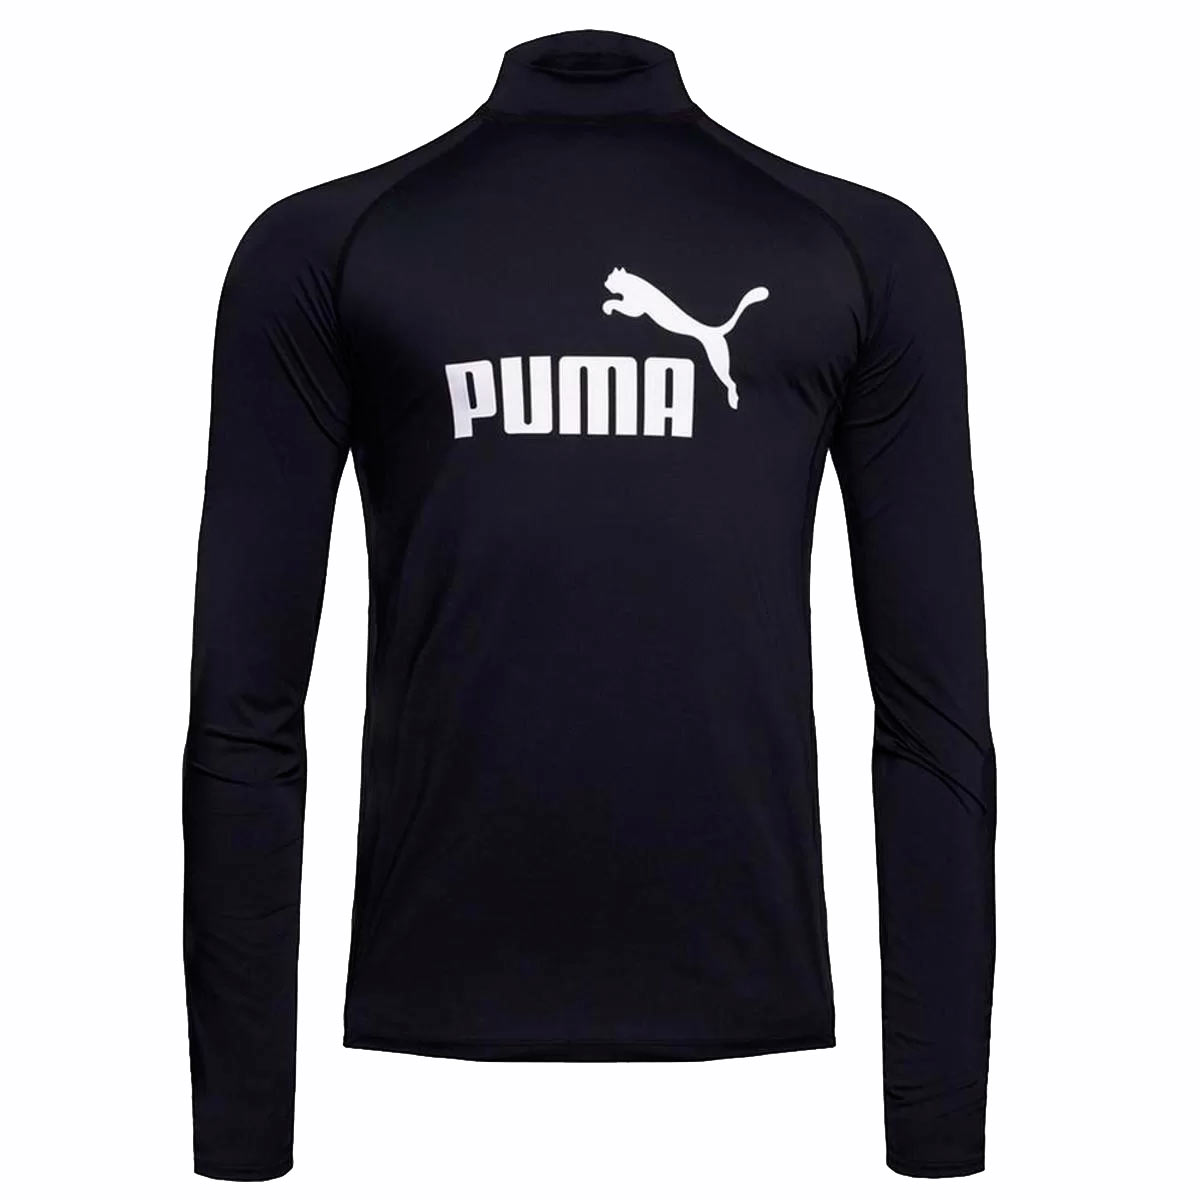 Camiseta Térmica Puma UV50+ Manga Longa Masculina - Preto